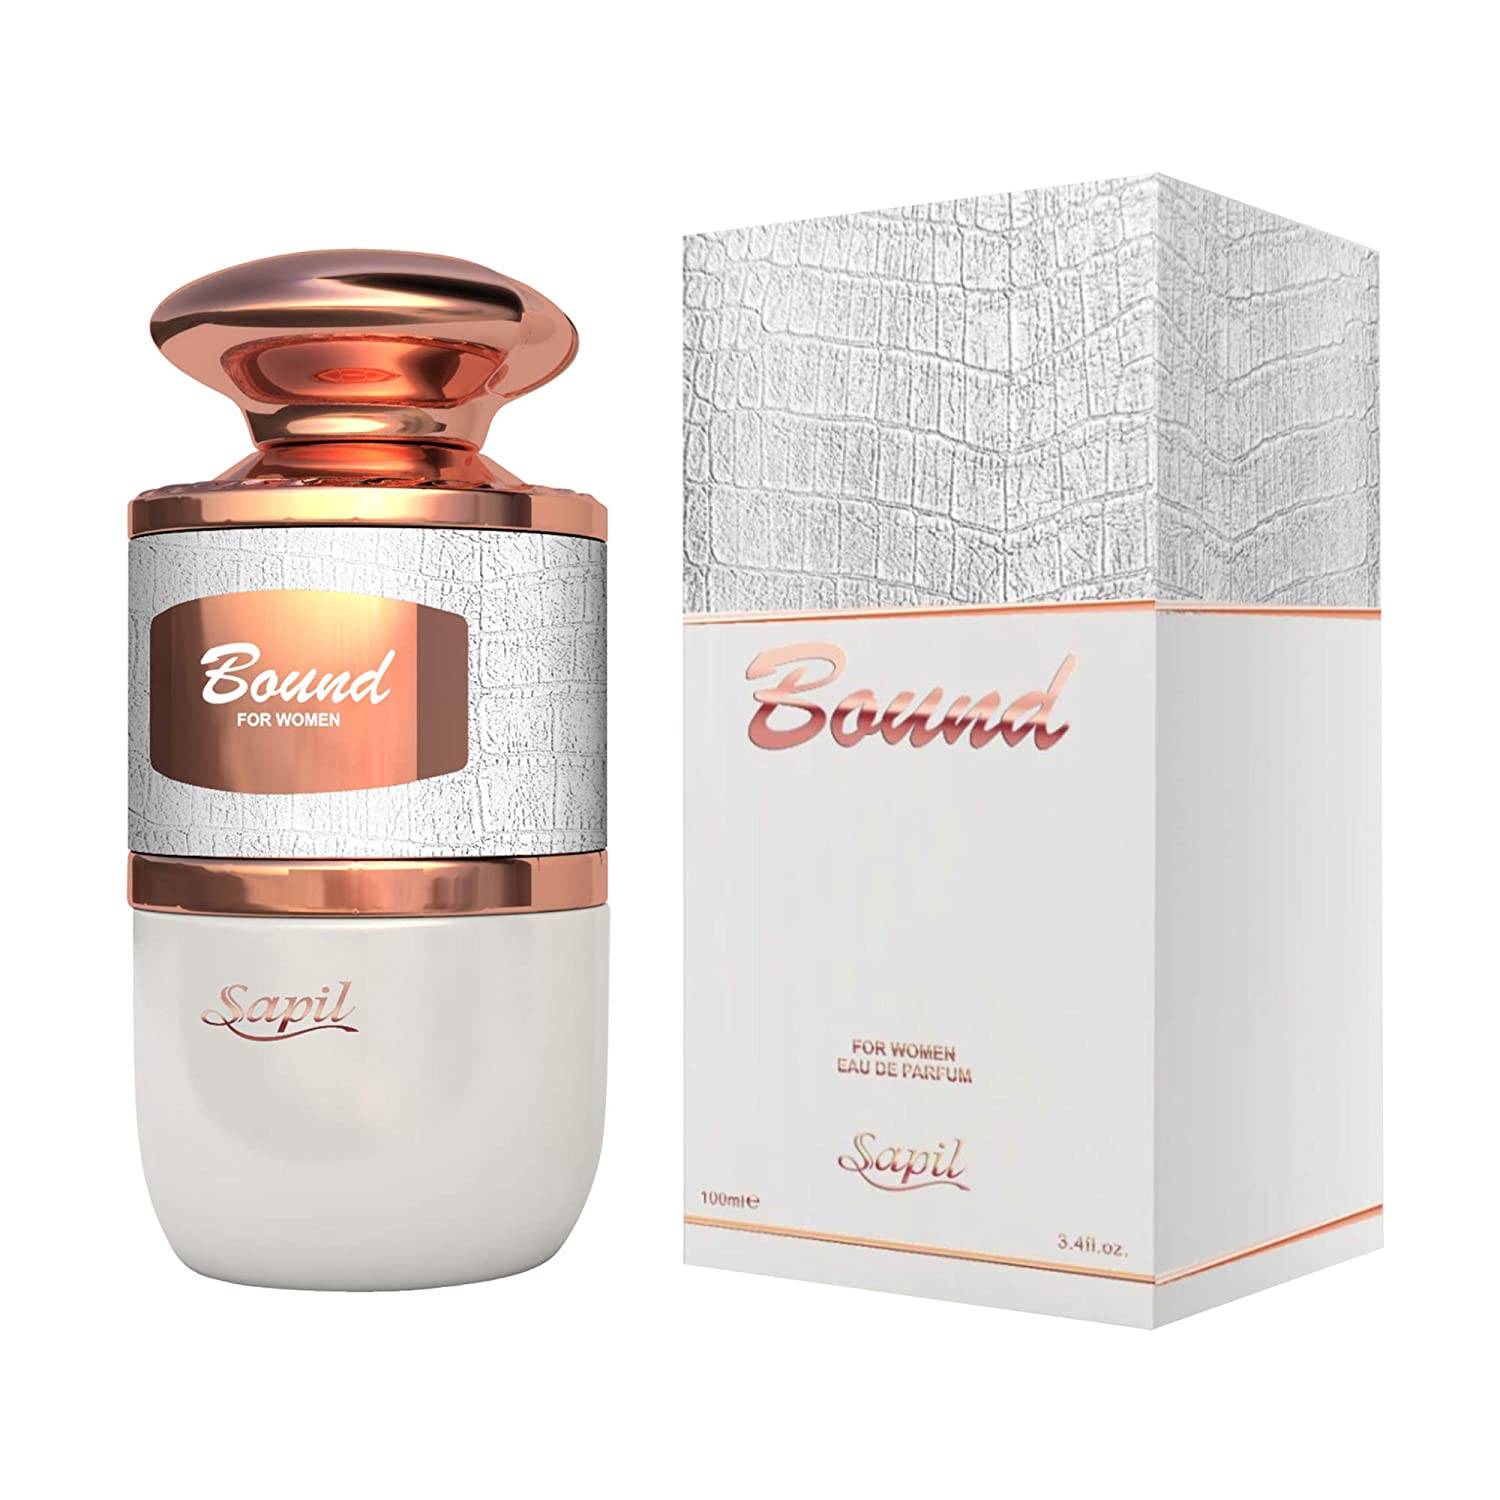 parfum bound for women - Acasa